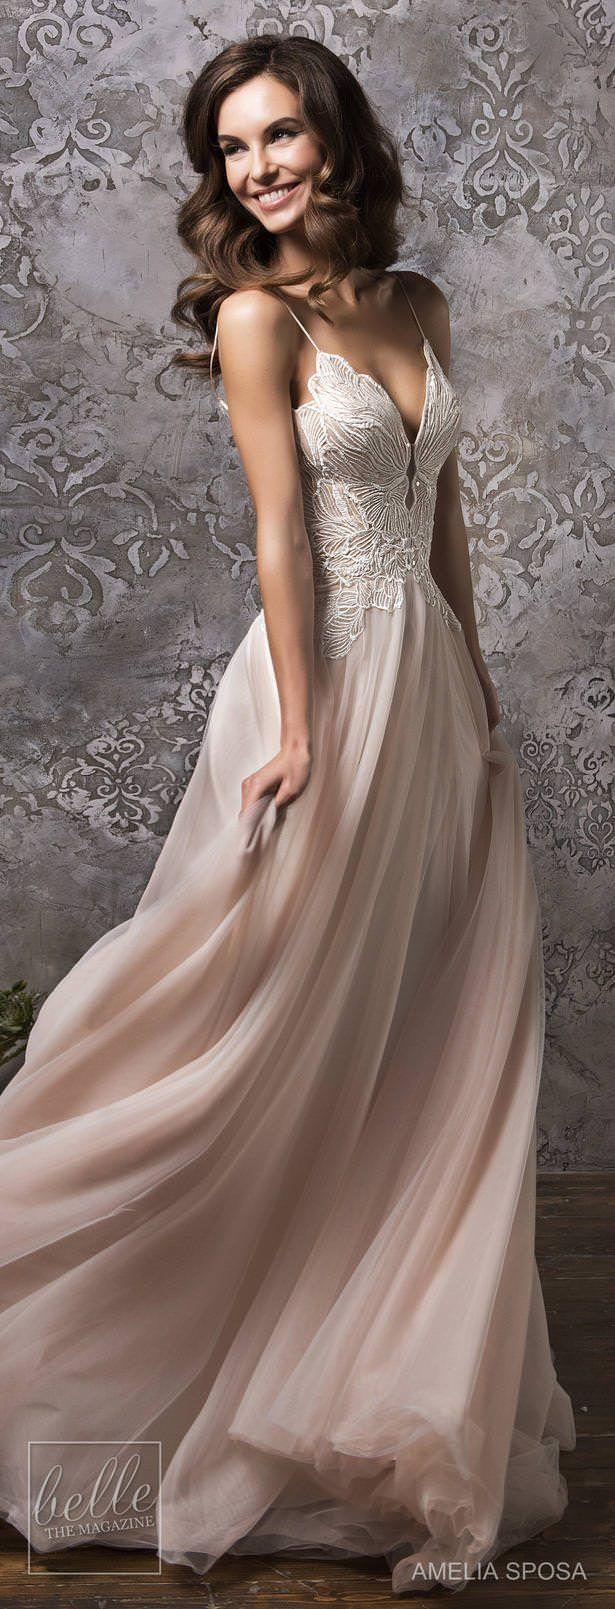 زفاف - Amelia Sposa Wedding Dress Collection Fall 2018